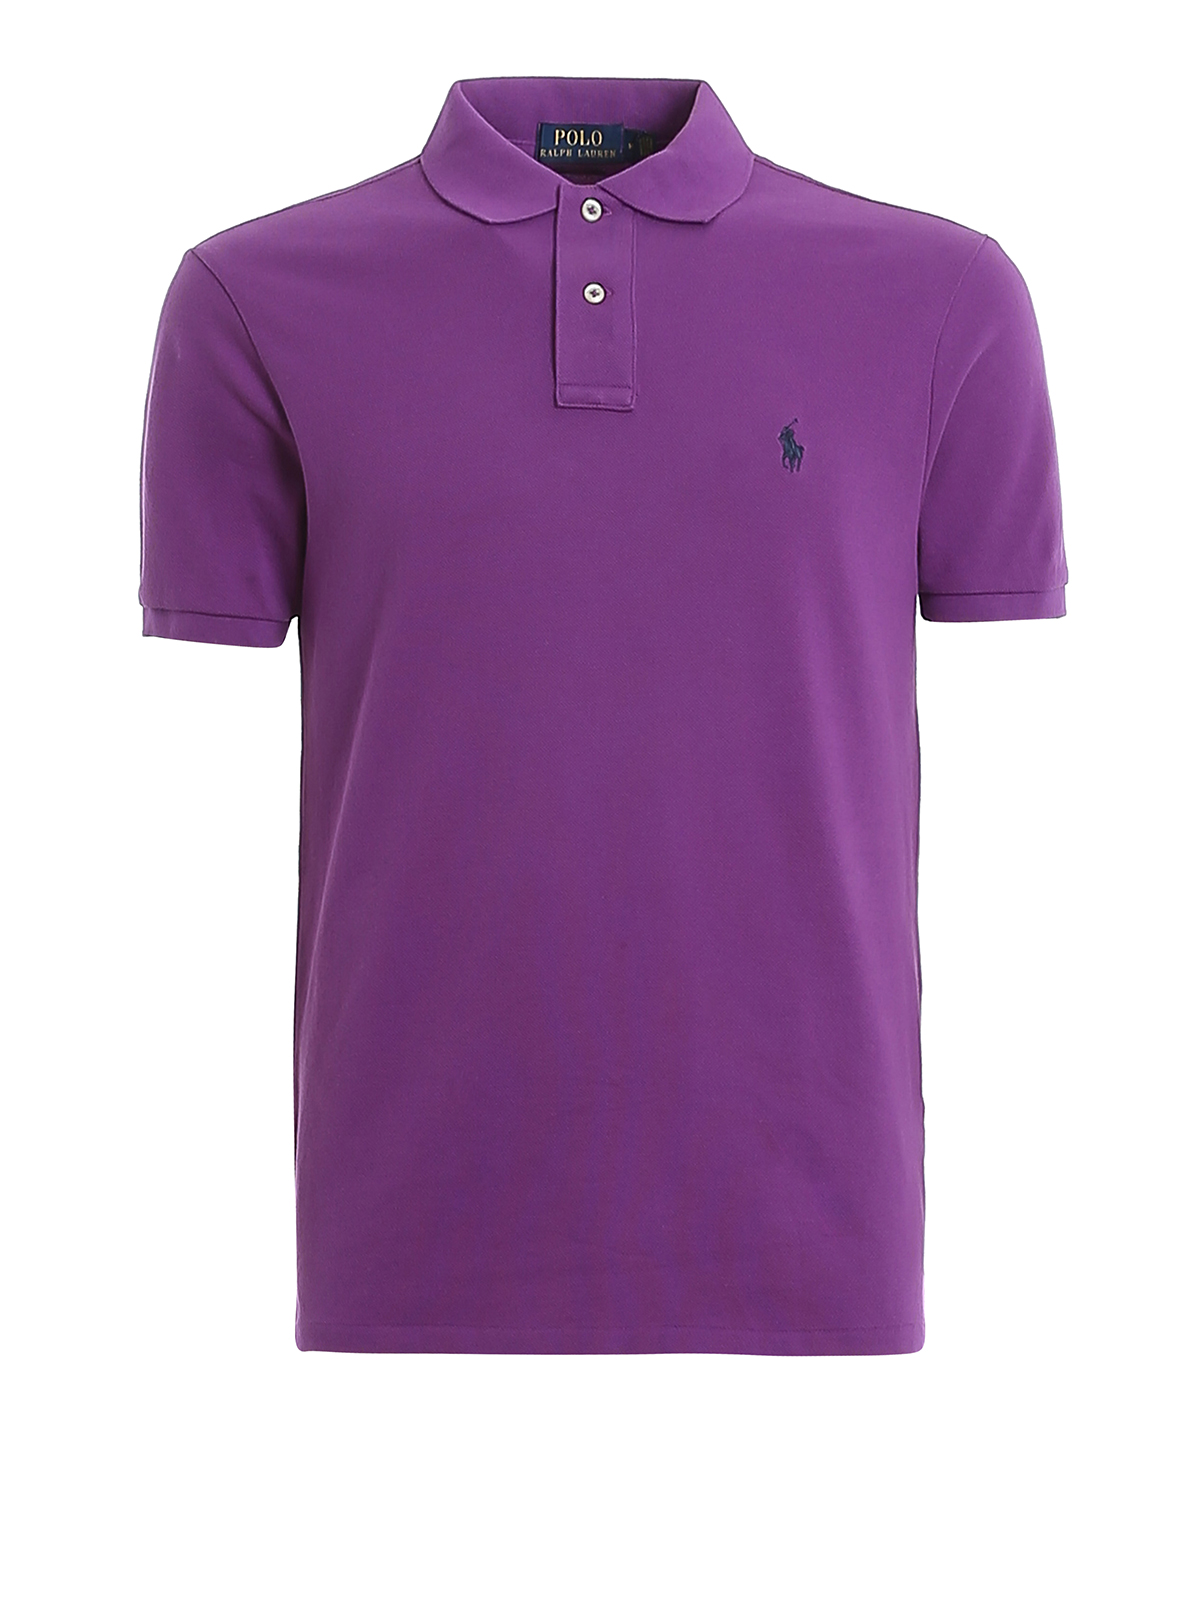 Polo Ralph Lauren Logo Embroidery Purple Pique Polo Shirt